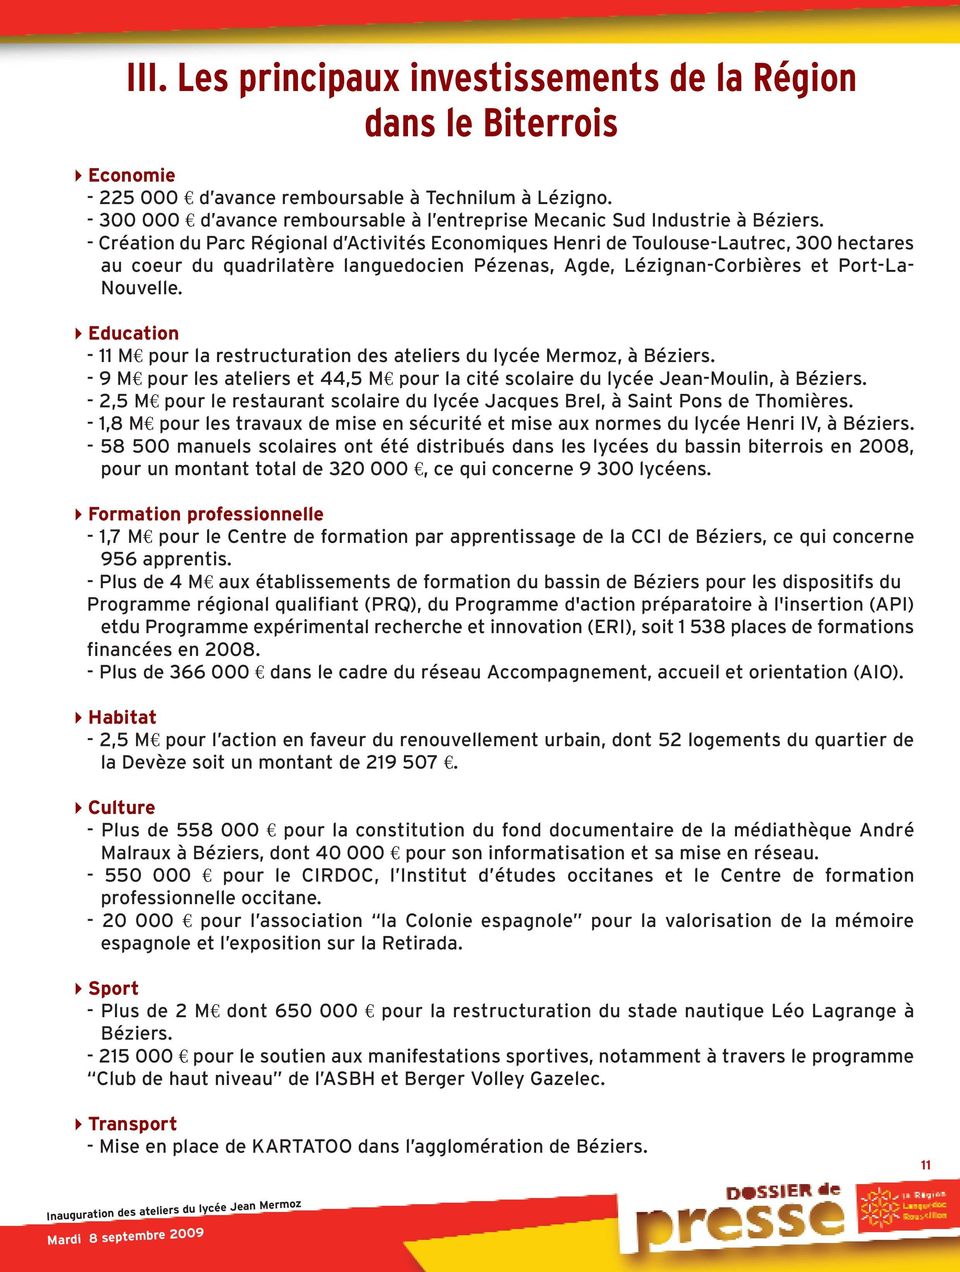 - Création du Parc Régional d Activités Economiques Henri de Toulouse-Lautrec, 300 hectares au coeur du quadrilatère languedocien Pézenas, Agde, Lézignan-Corbières et Port-La- Nouvelle.